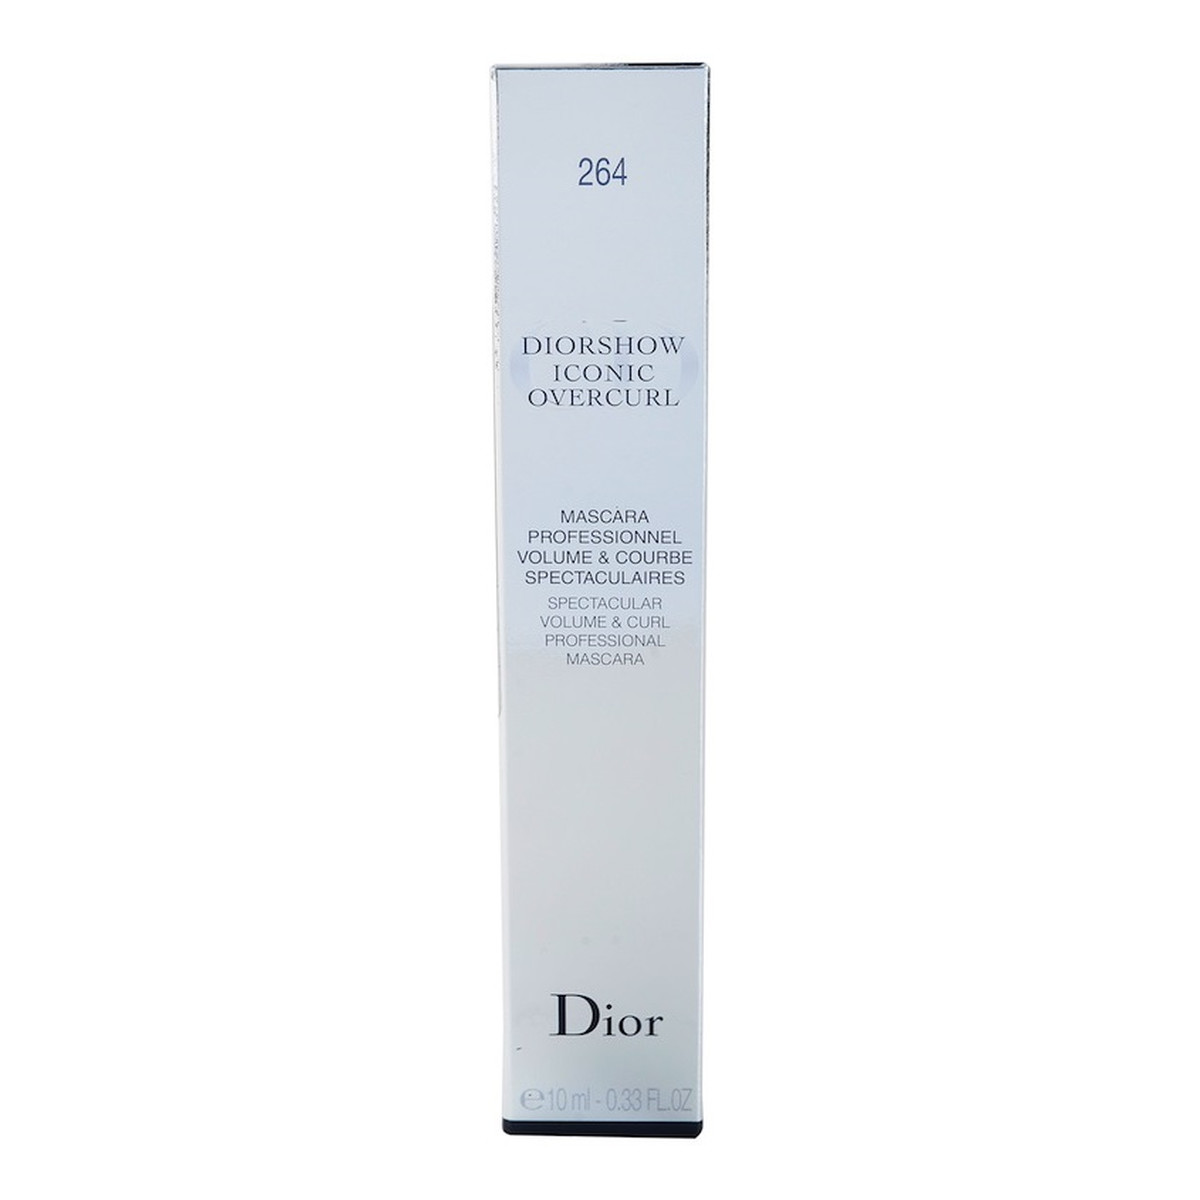 Dior Diorshow Iconic Overcurl Tusz do rzęs zwiększający objętość i podkręcający (Spectacular Volume & Curl Professional Mascara) 10ml